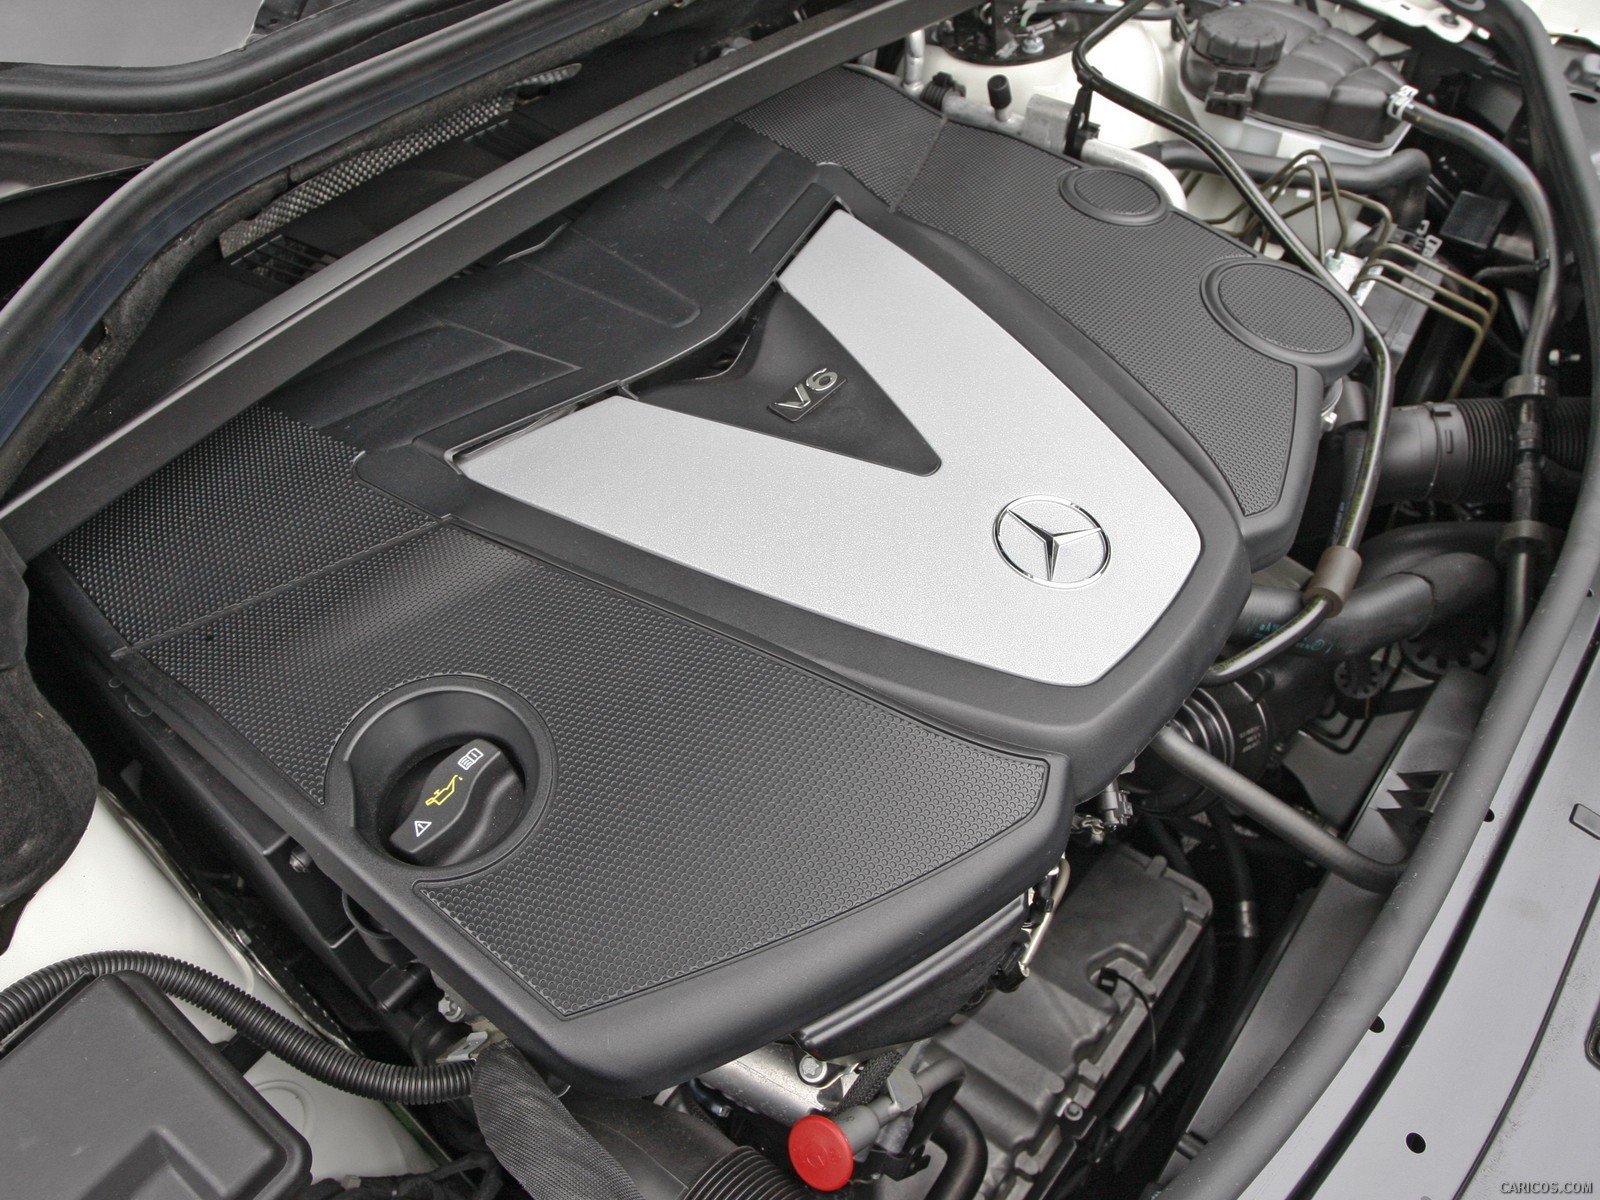 2010 Mercedes-Benz GL350 BlueTEC - Engine, #33 of 112